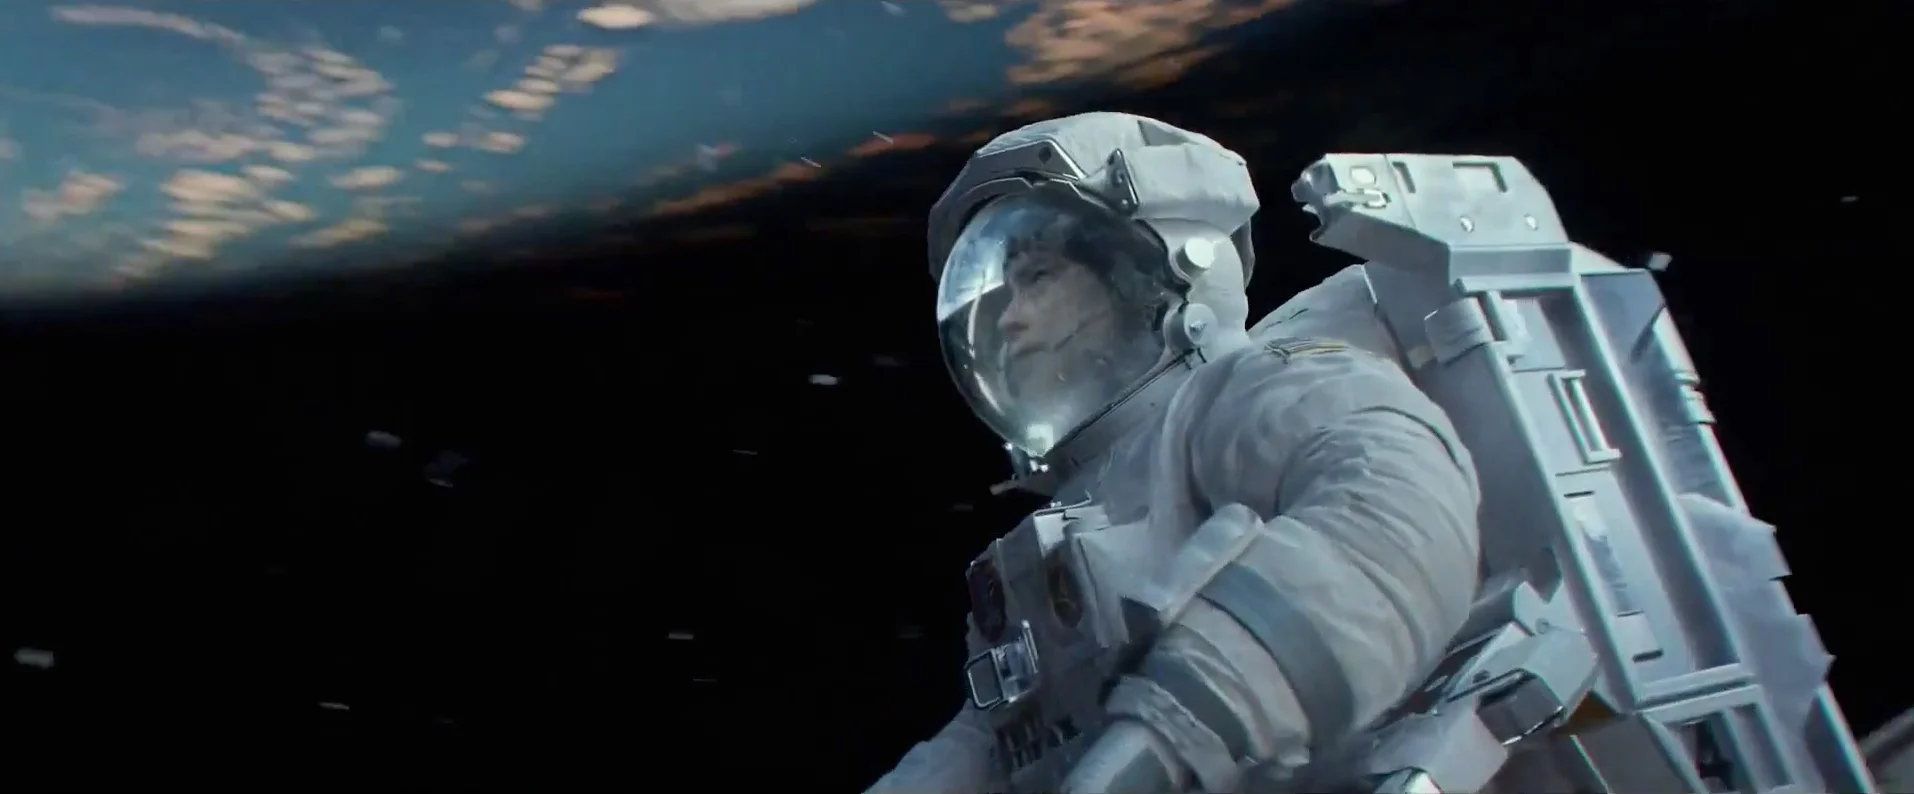 Российская звезда вылетела на МКС для съёмок «Вызова»: как другие актёры готовились к кино о космосе - фото 2